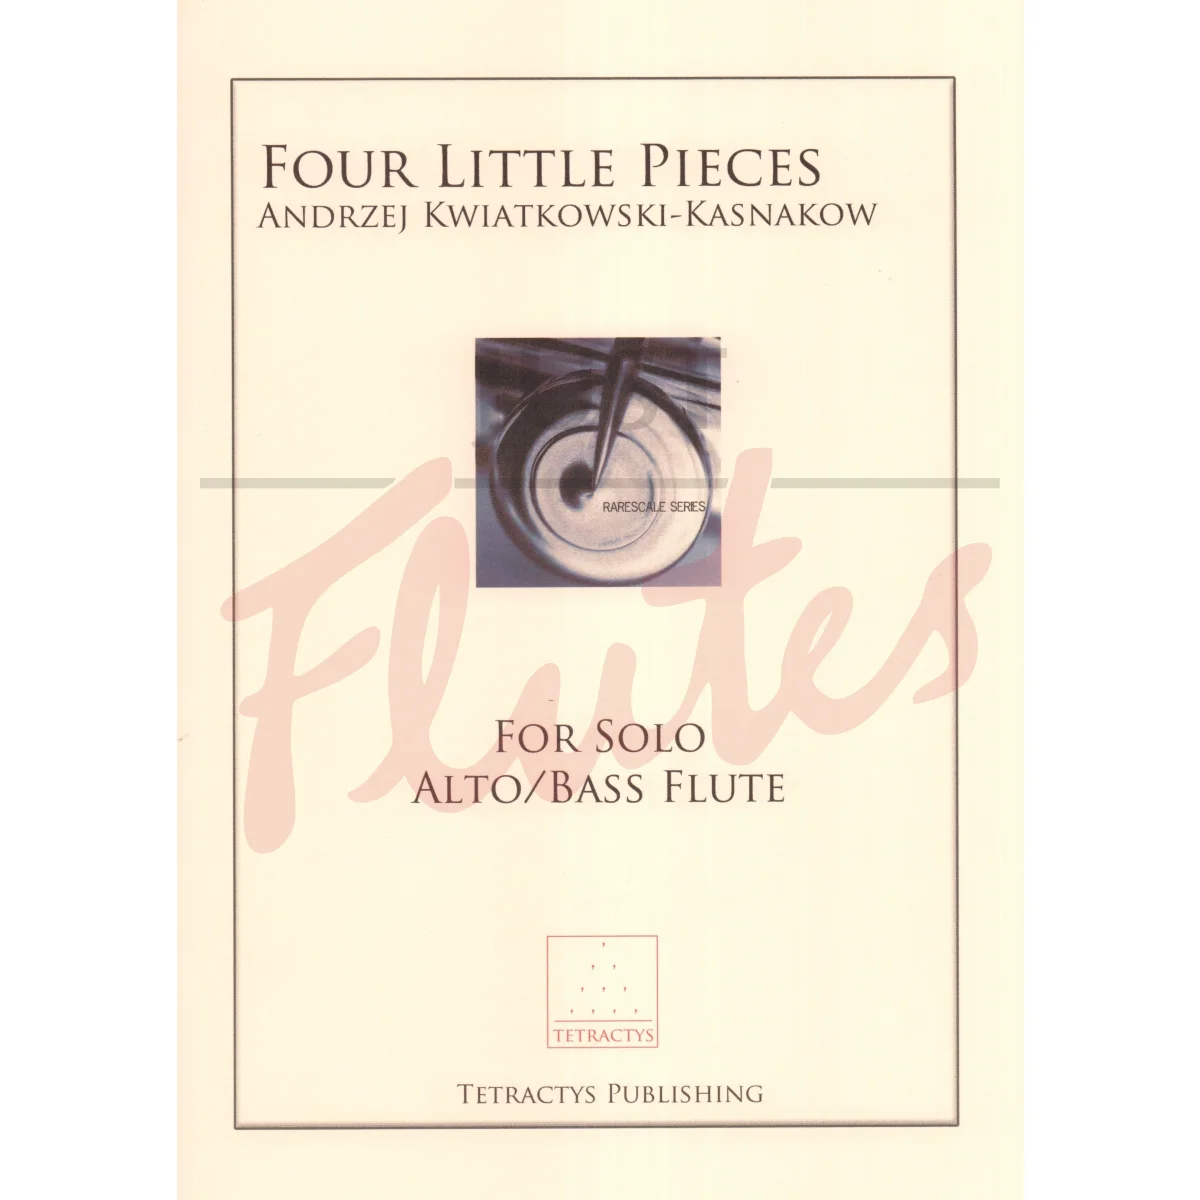 Four Little Pieces for Alto/Bass Flute